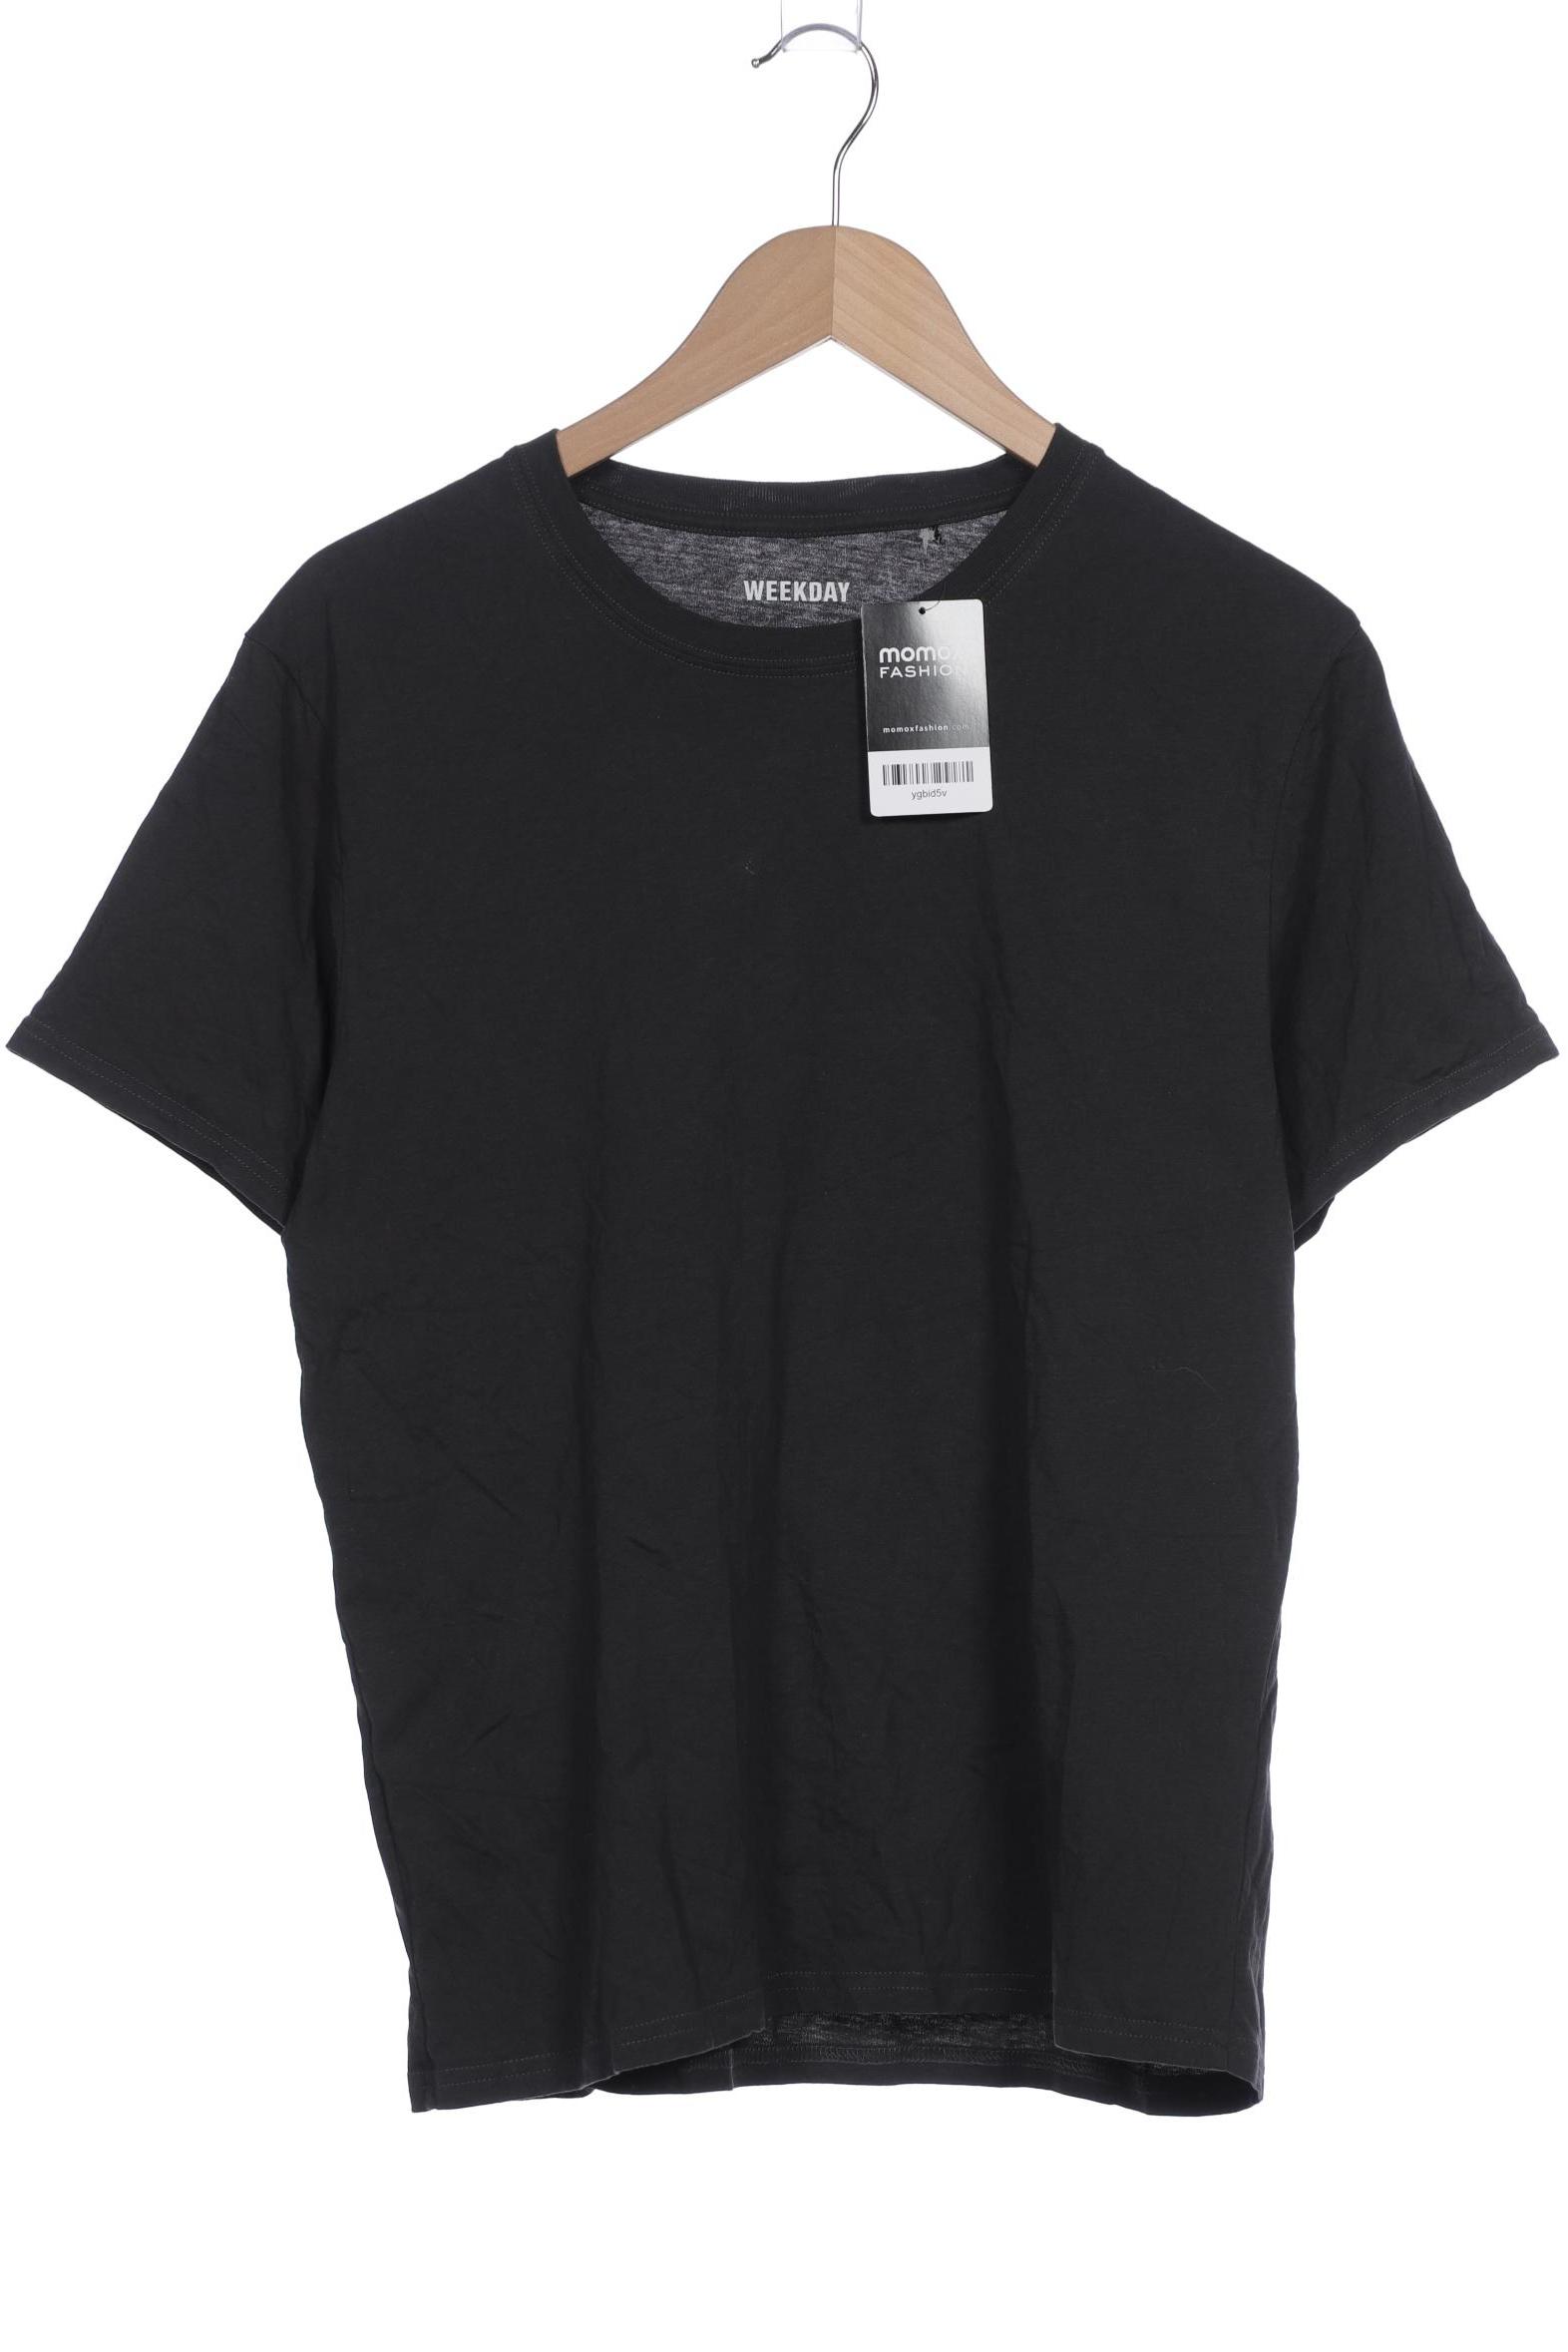 Weekday Herren T-Shirt, grau, Gr. 48 von Weekday